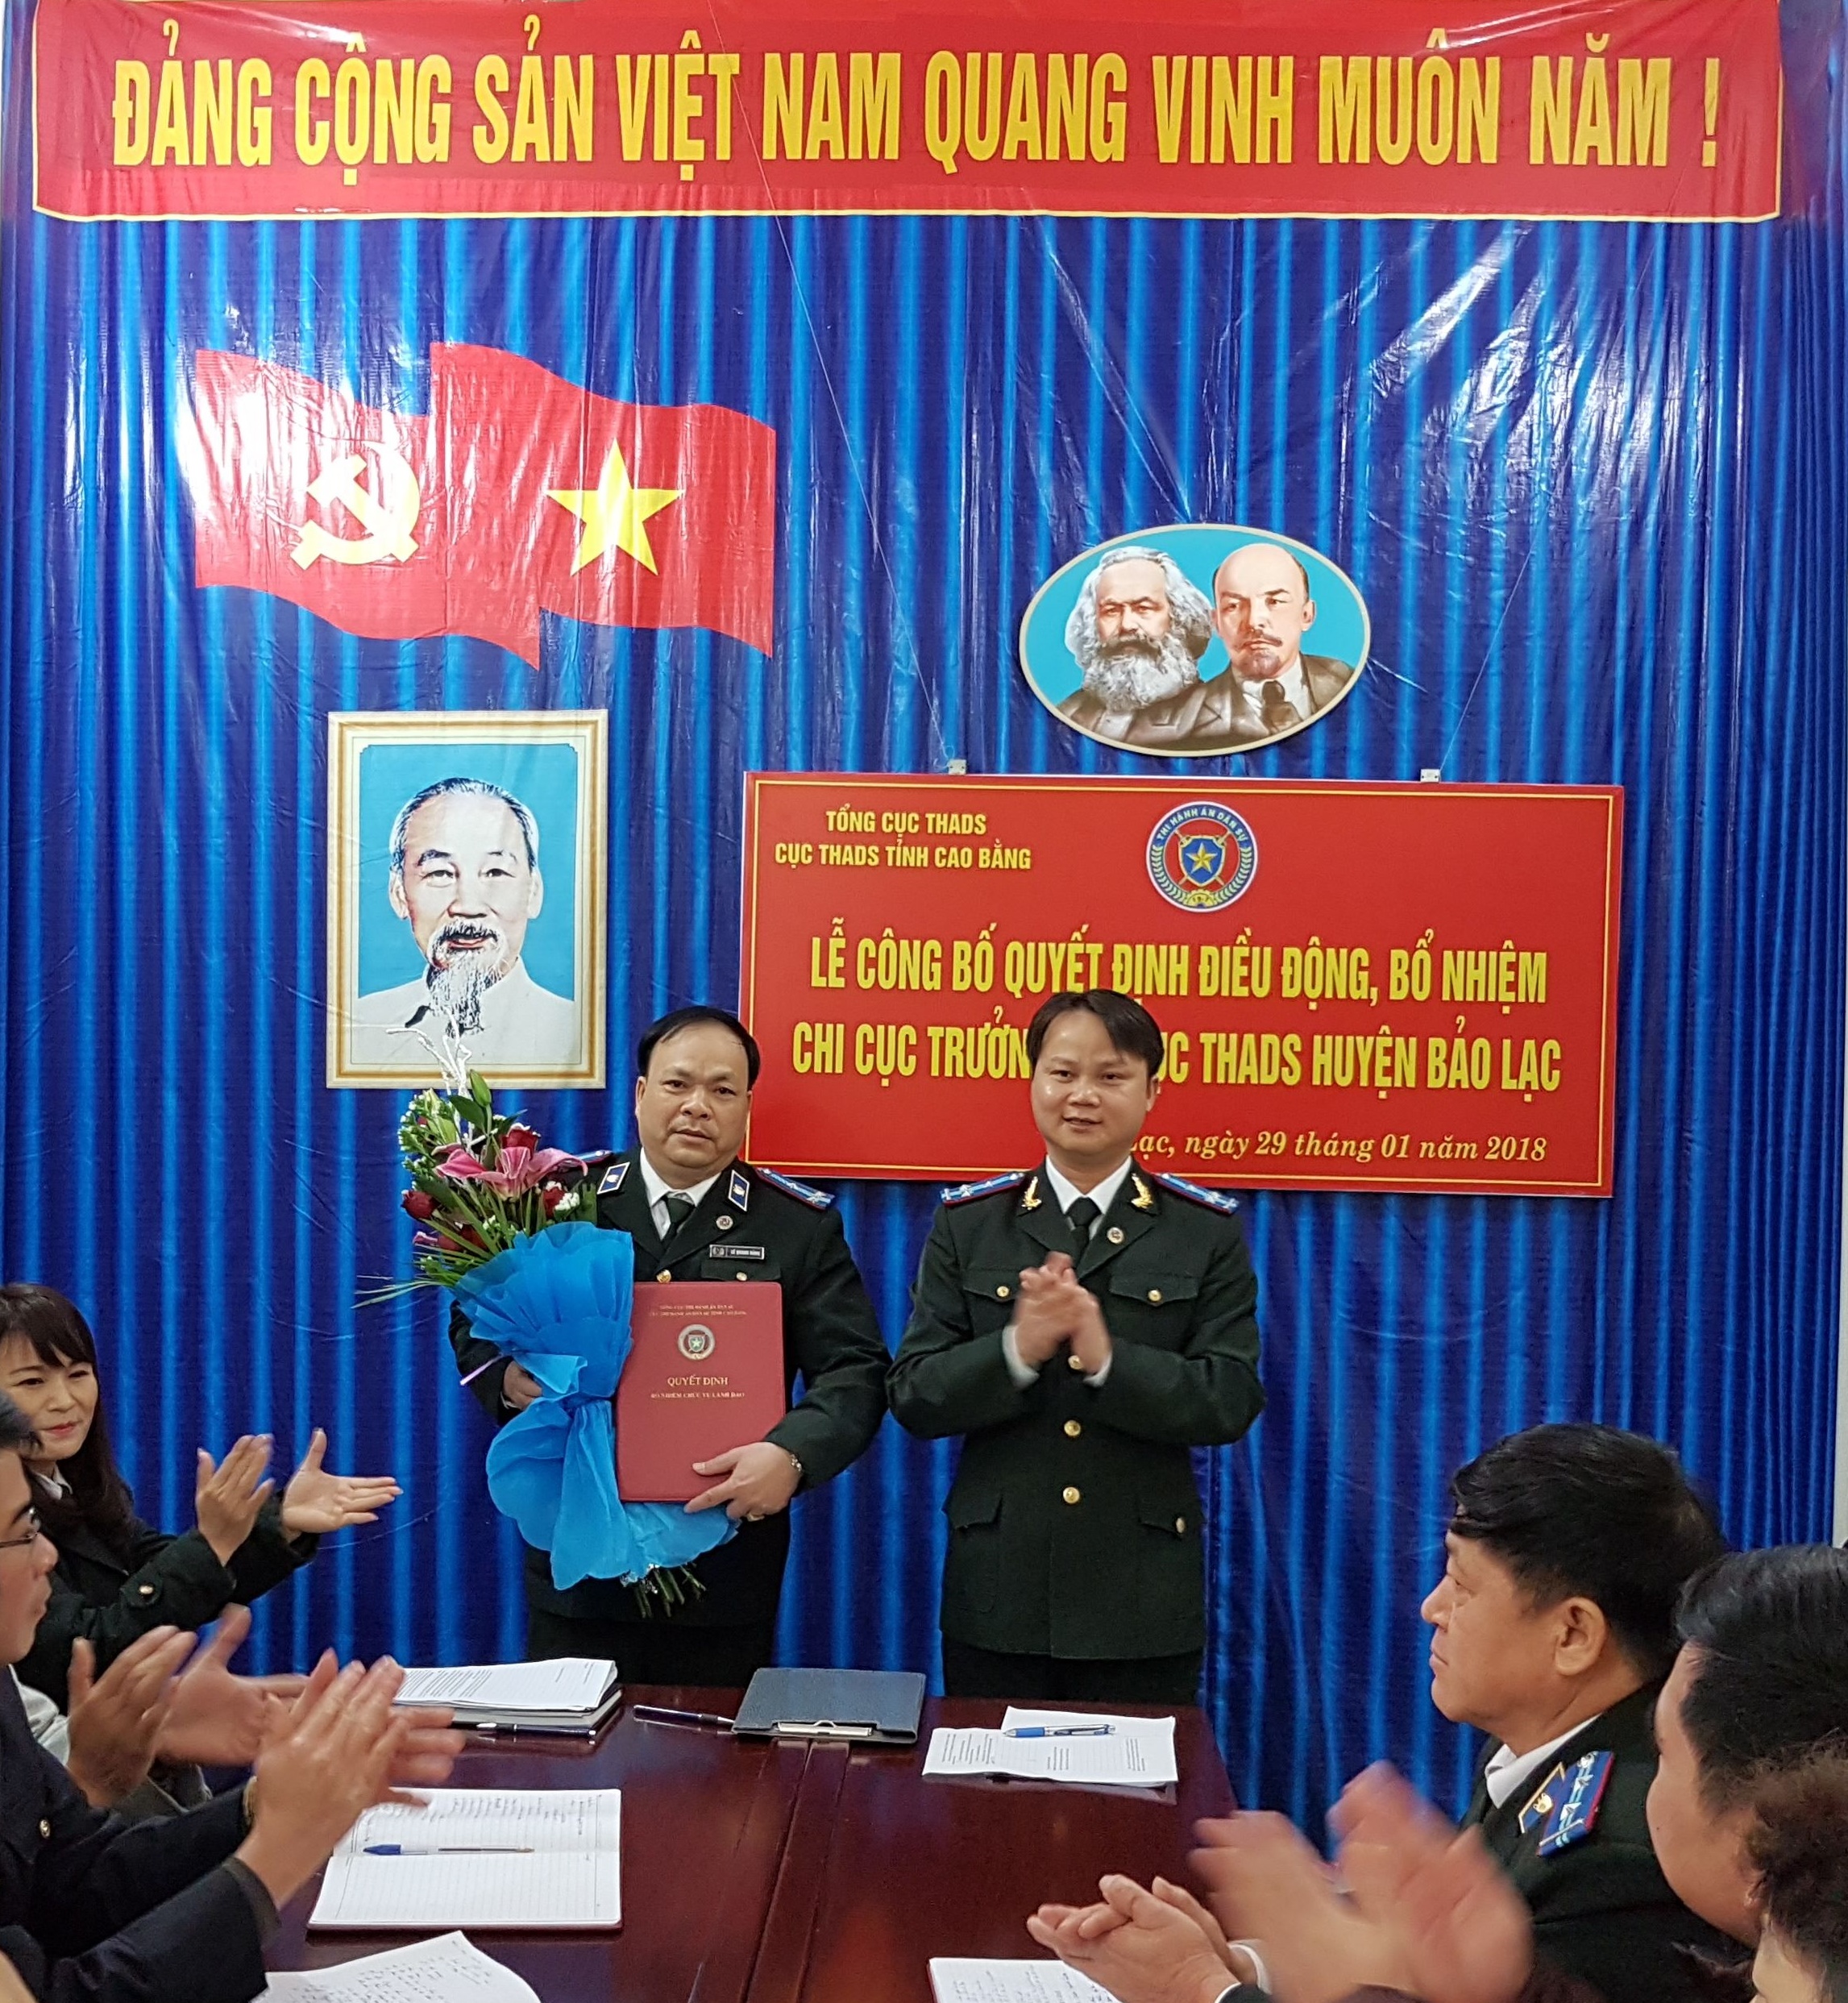 Công bố quyết định điều động, bổ nhiệm Chi cục trưởng Chi cục THADS huyện Bảo Lạc